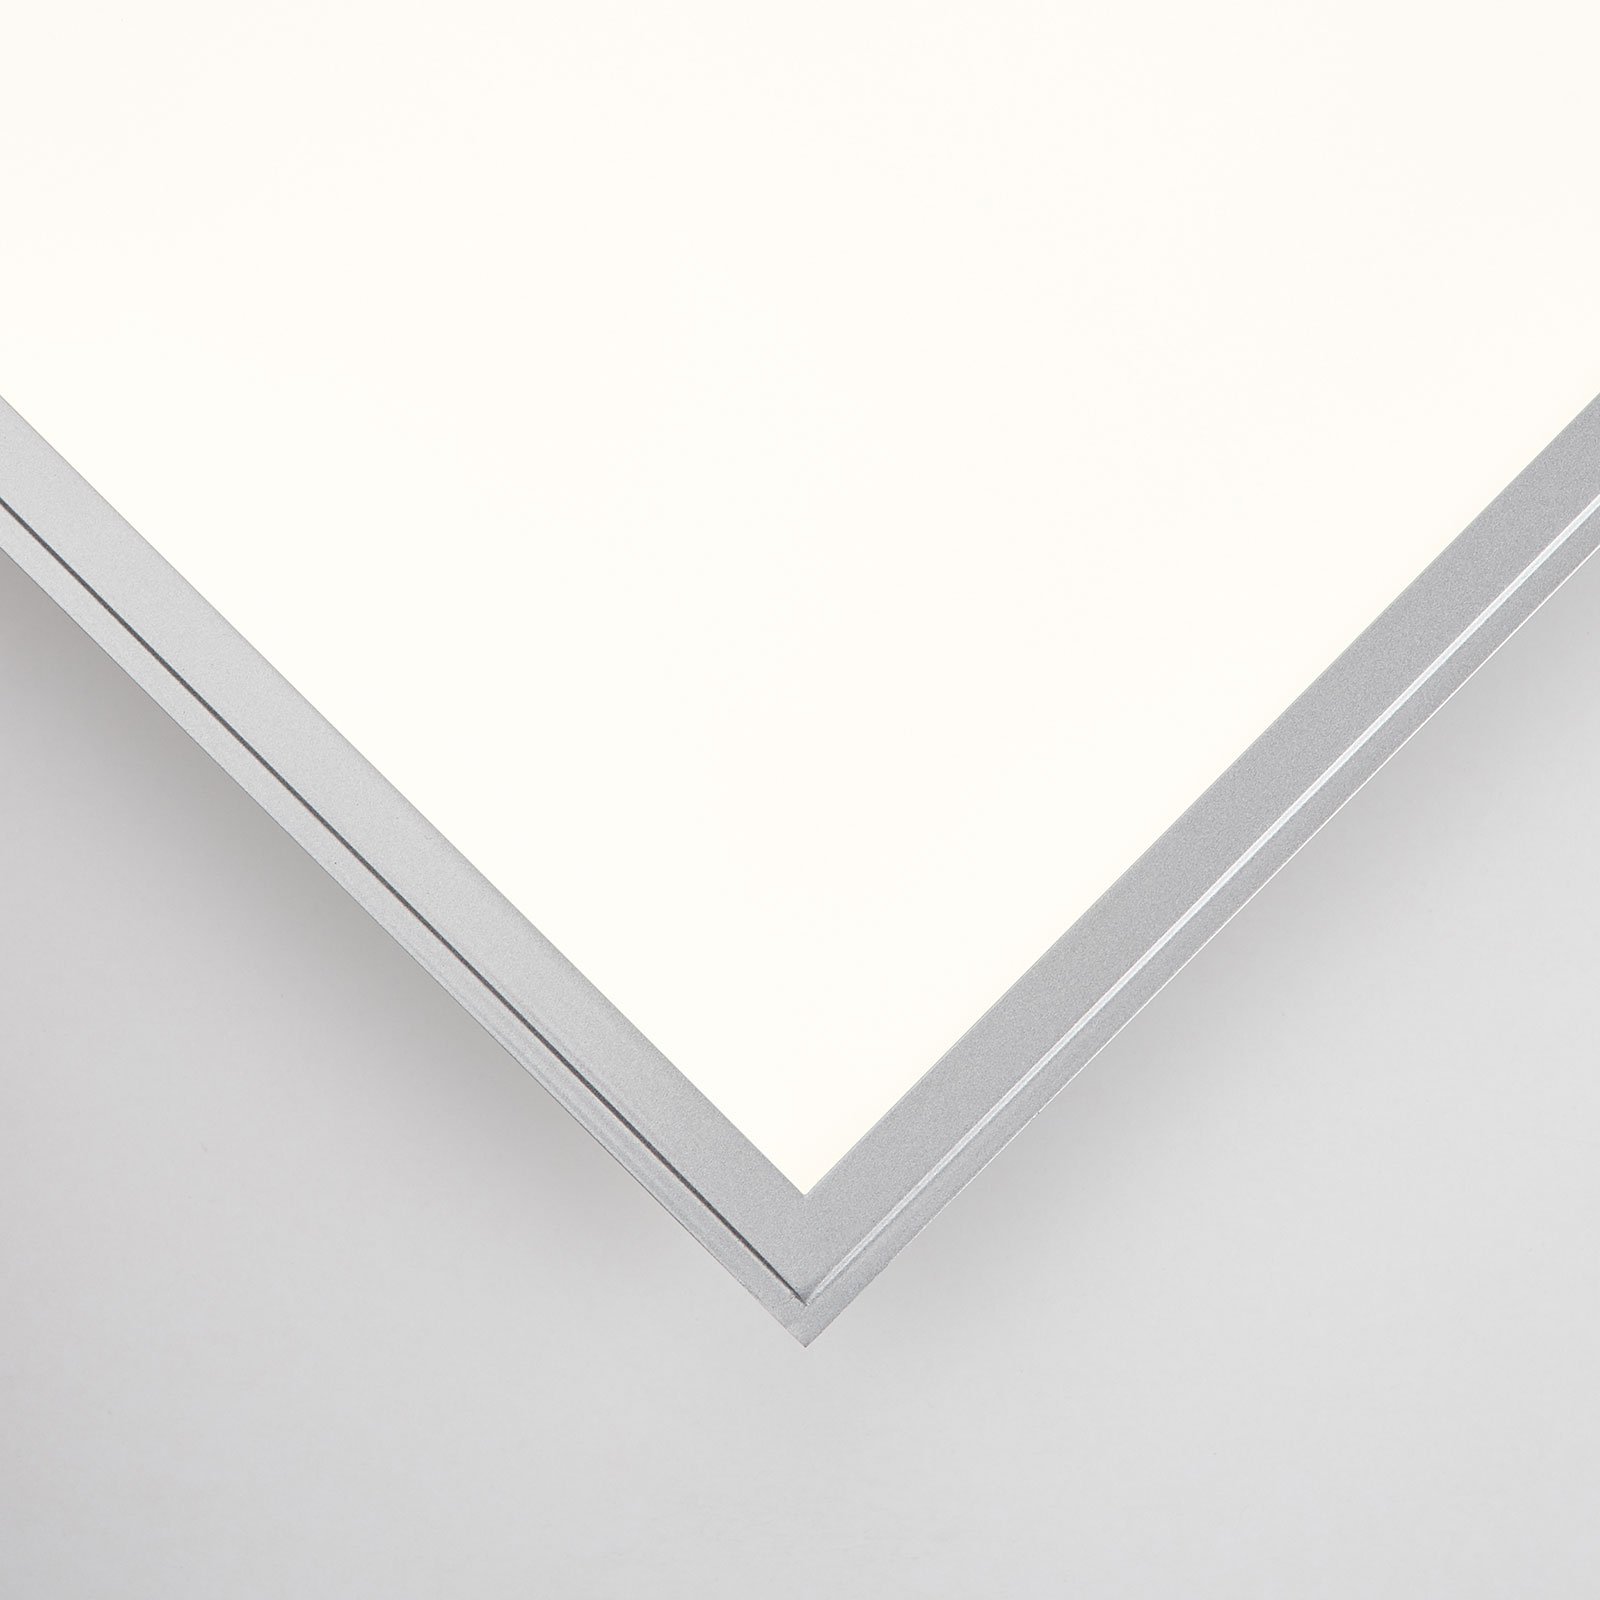 LED ceiling light Alissa, 119.5 x 29.5 cm